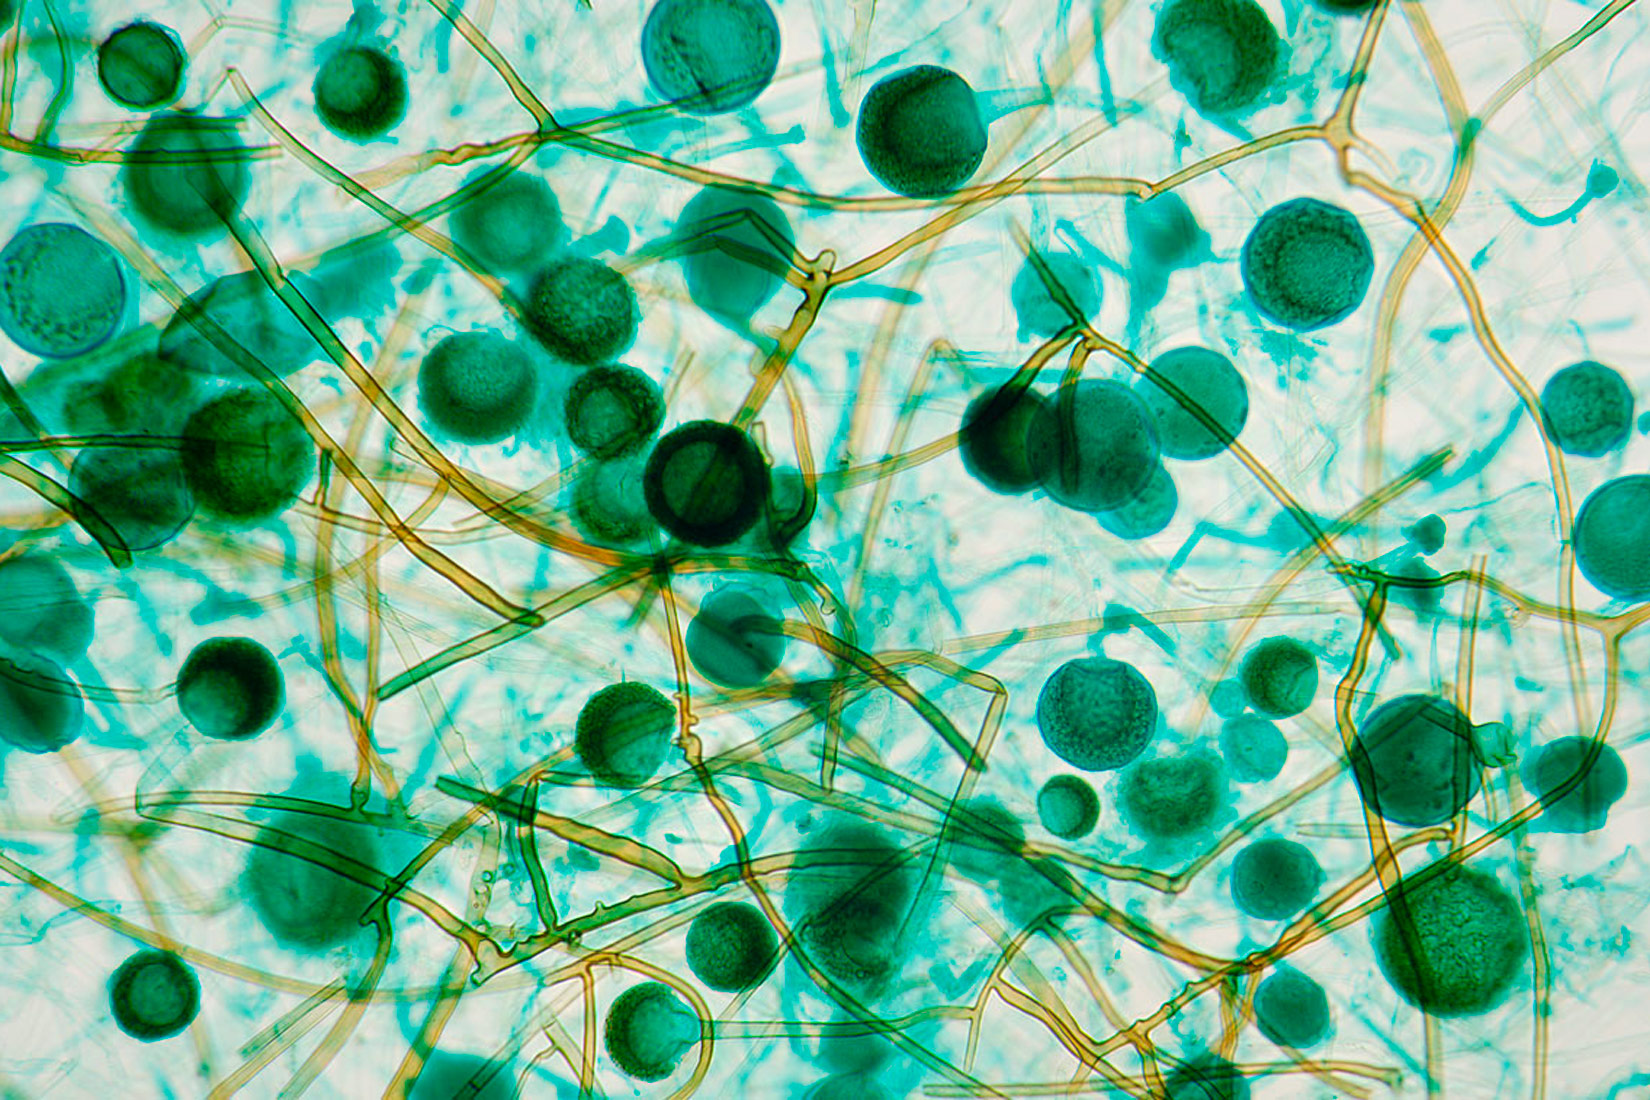 Slika prikazuje mikroskopsku sliku plijesni. Pravilnog su kuglišastog oblika i zelene boje, a povezuju ih žućkaste niti.